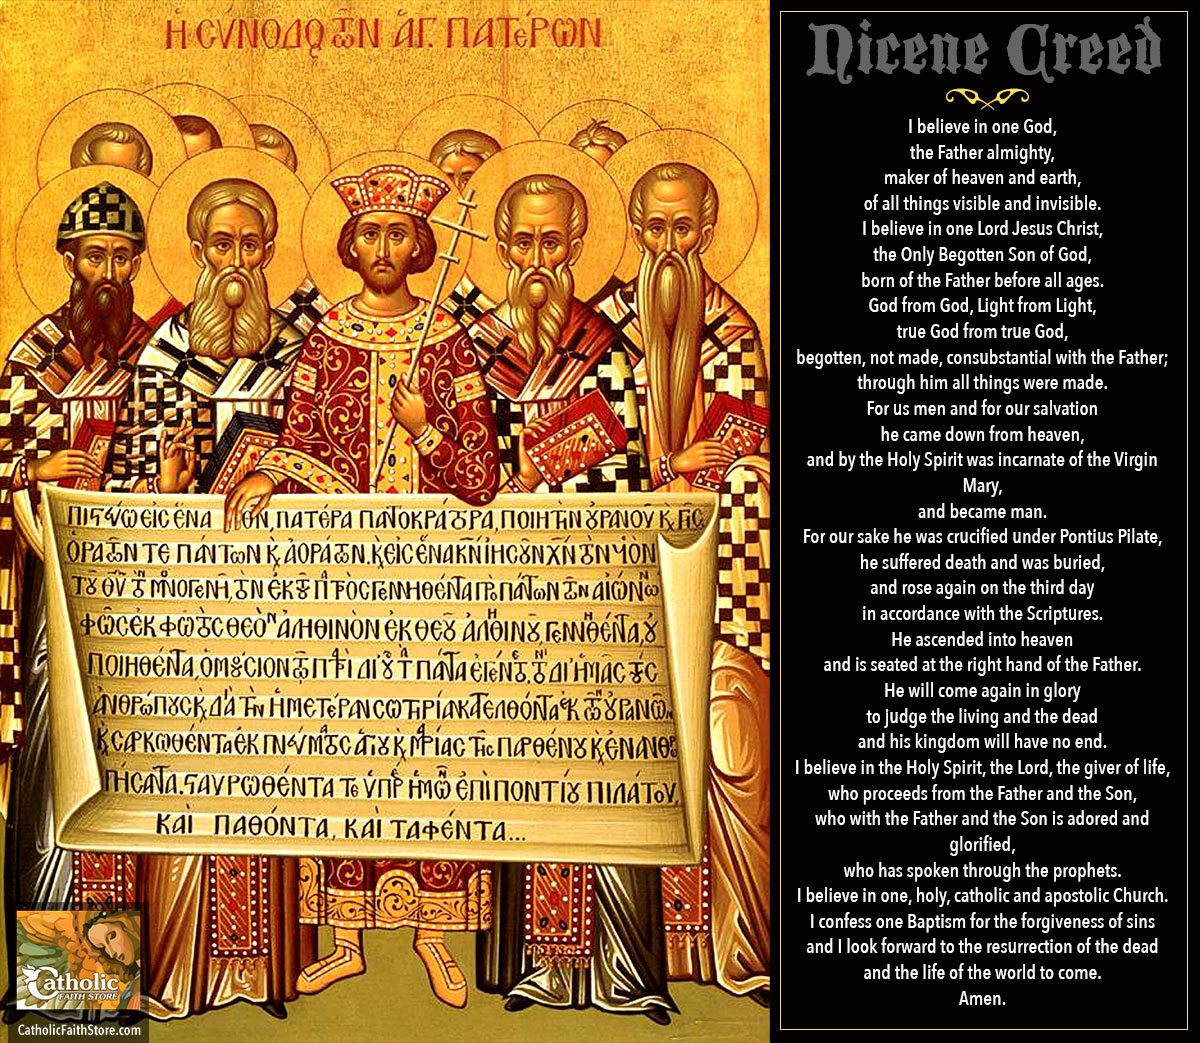 Nicene Creed